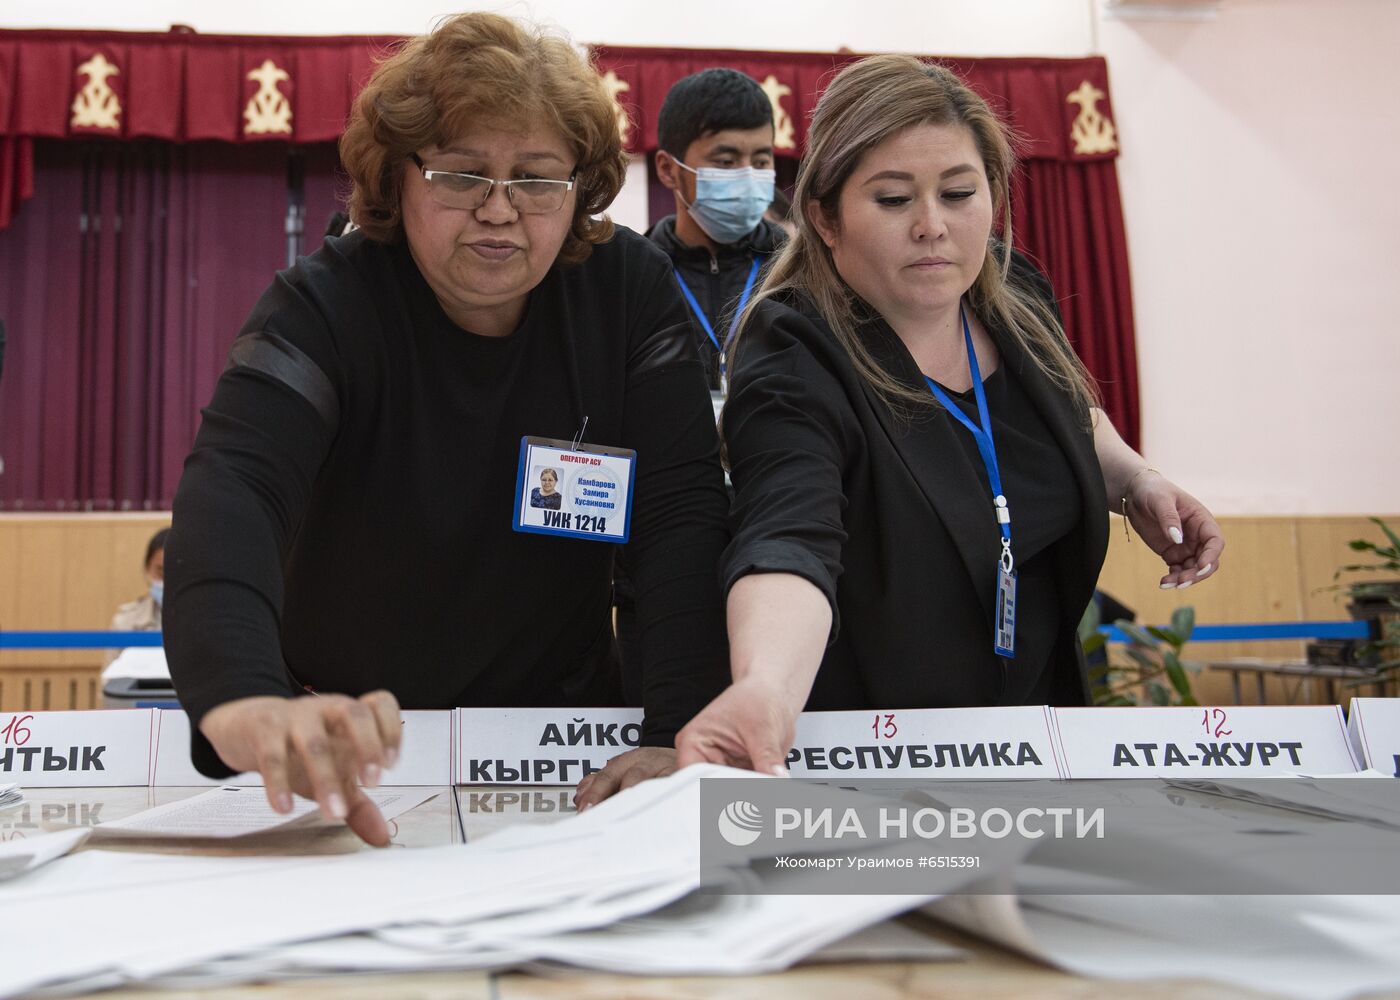 Конституционный референдум в Киргизии